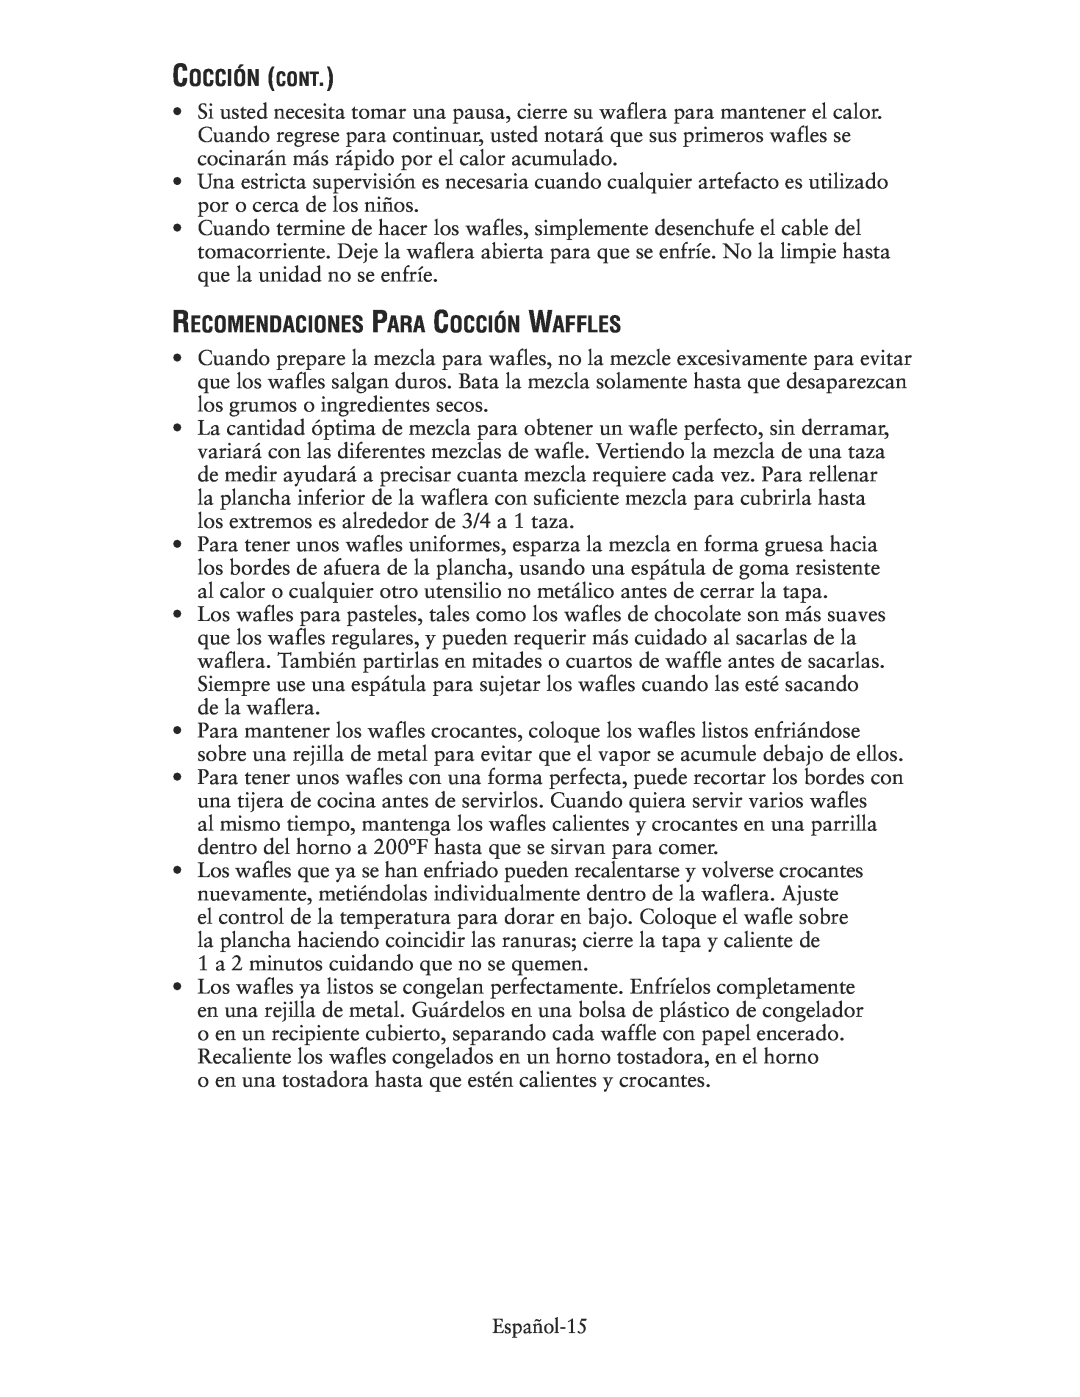 Oster 135018, CKSTWFBF10 user manual Cocción Cont, Recomendaciones Para Cocción Waffles 